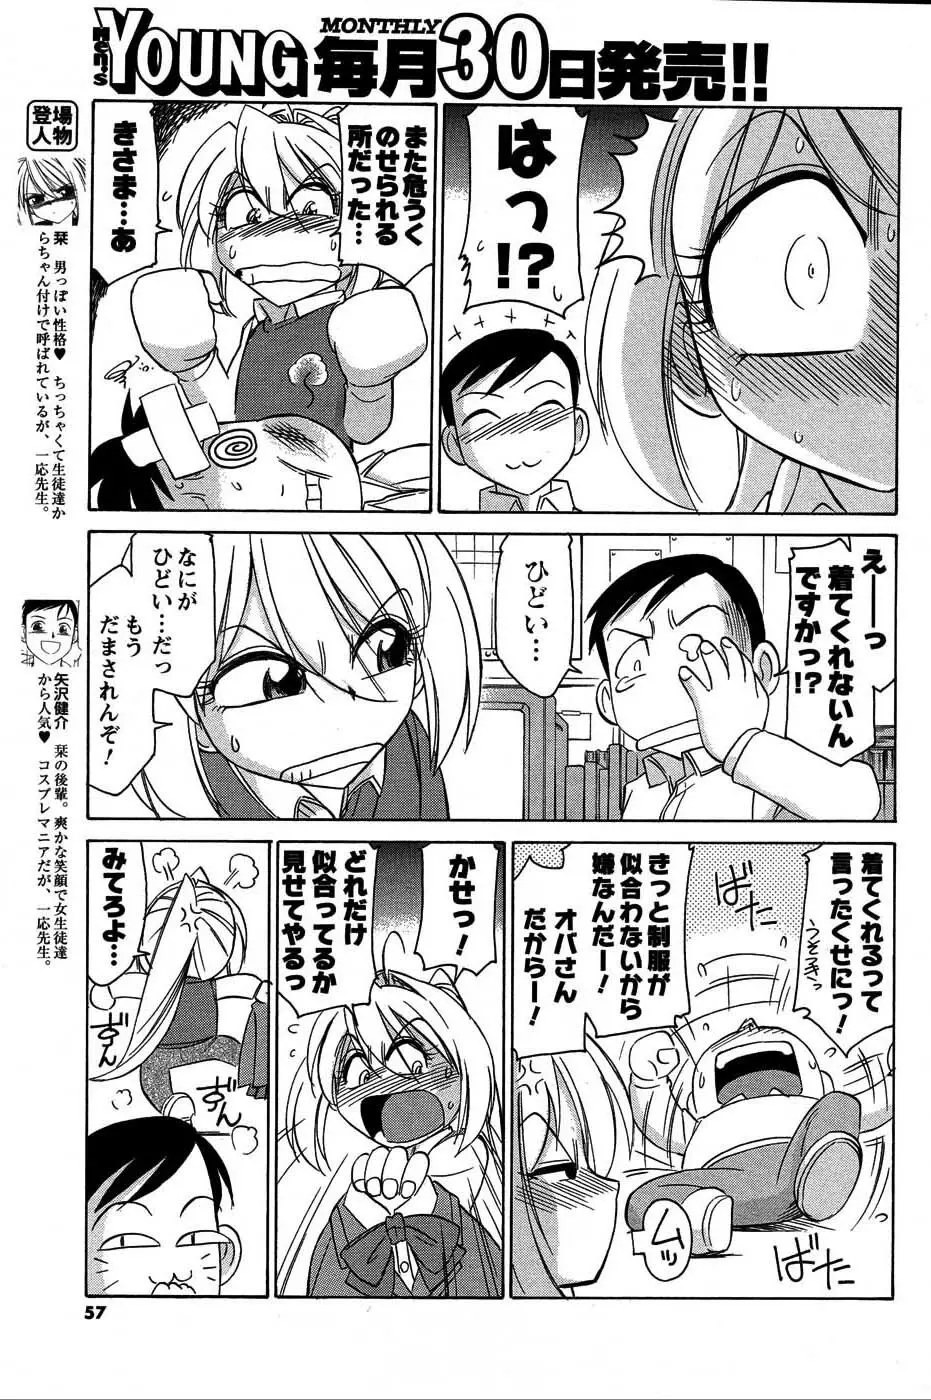 メンズヤングスペシャルIKAZUCHI雷 Vol.3 2007年9月号増刊 56ページ